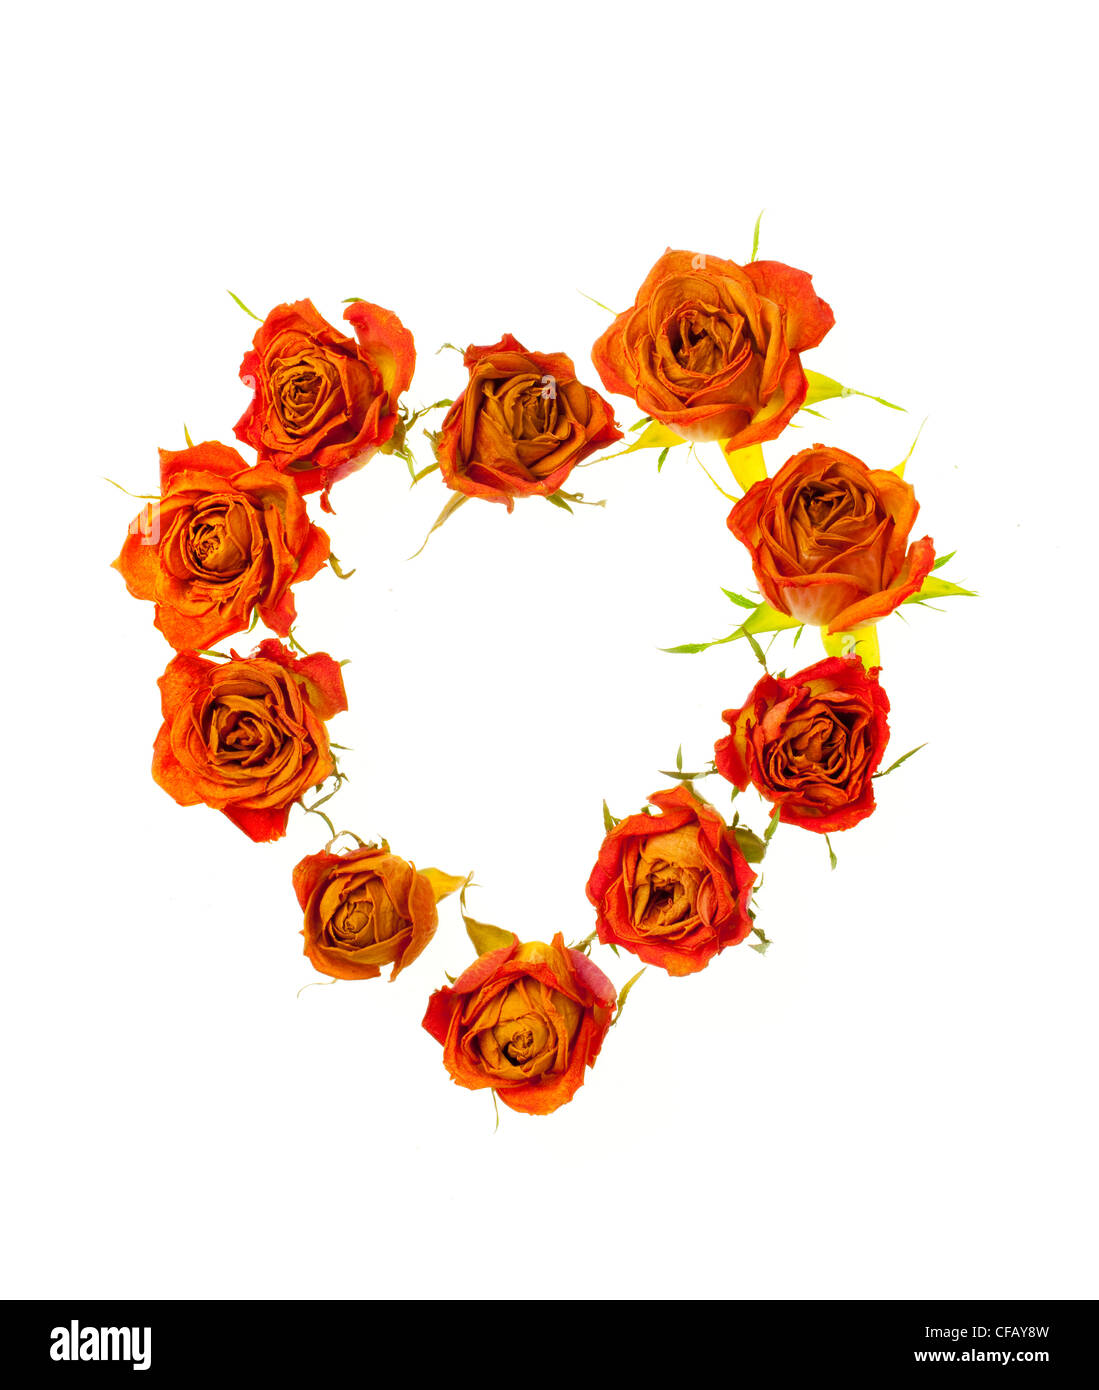 Rosen in der Form eines Herzens auf weißen Hintergrund Stockfoto